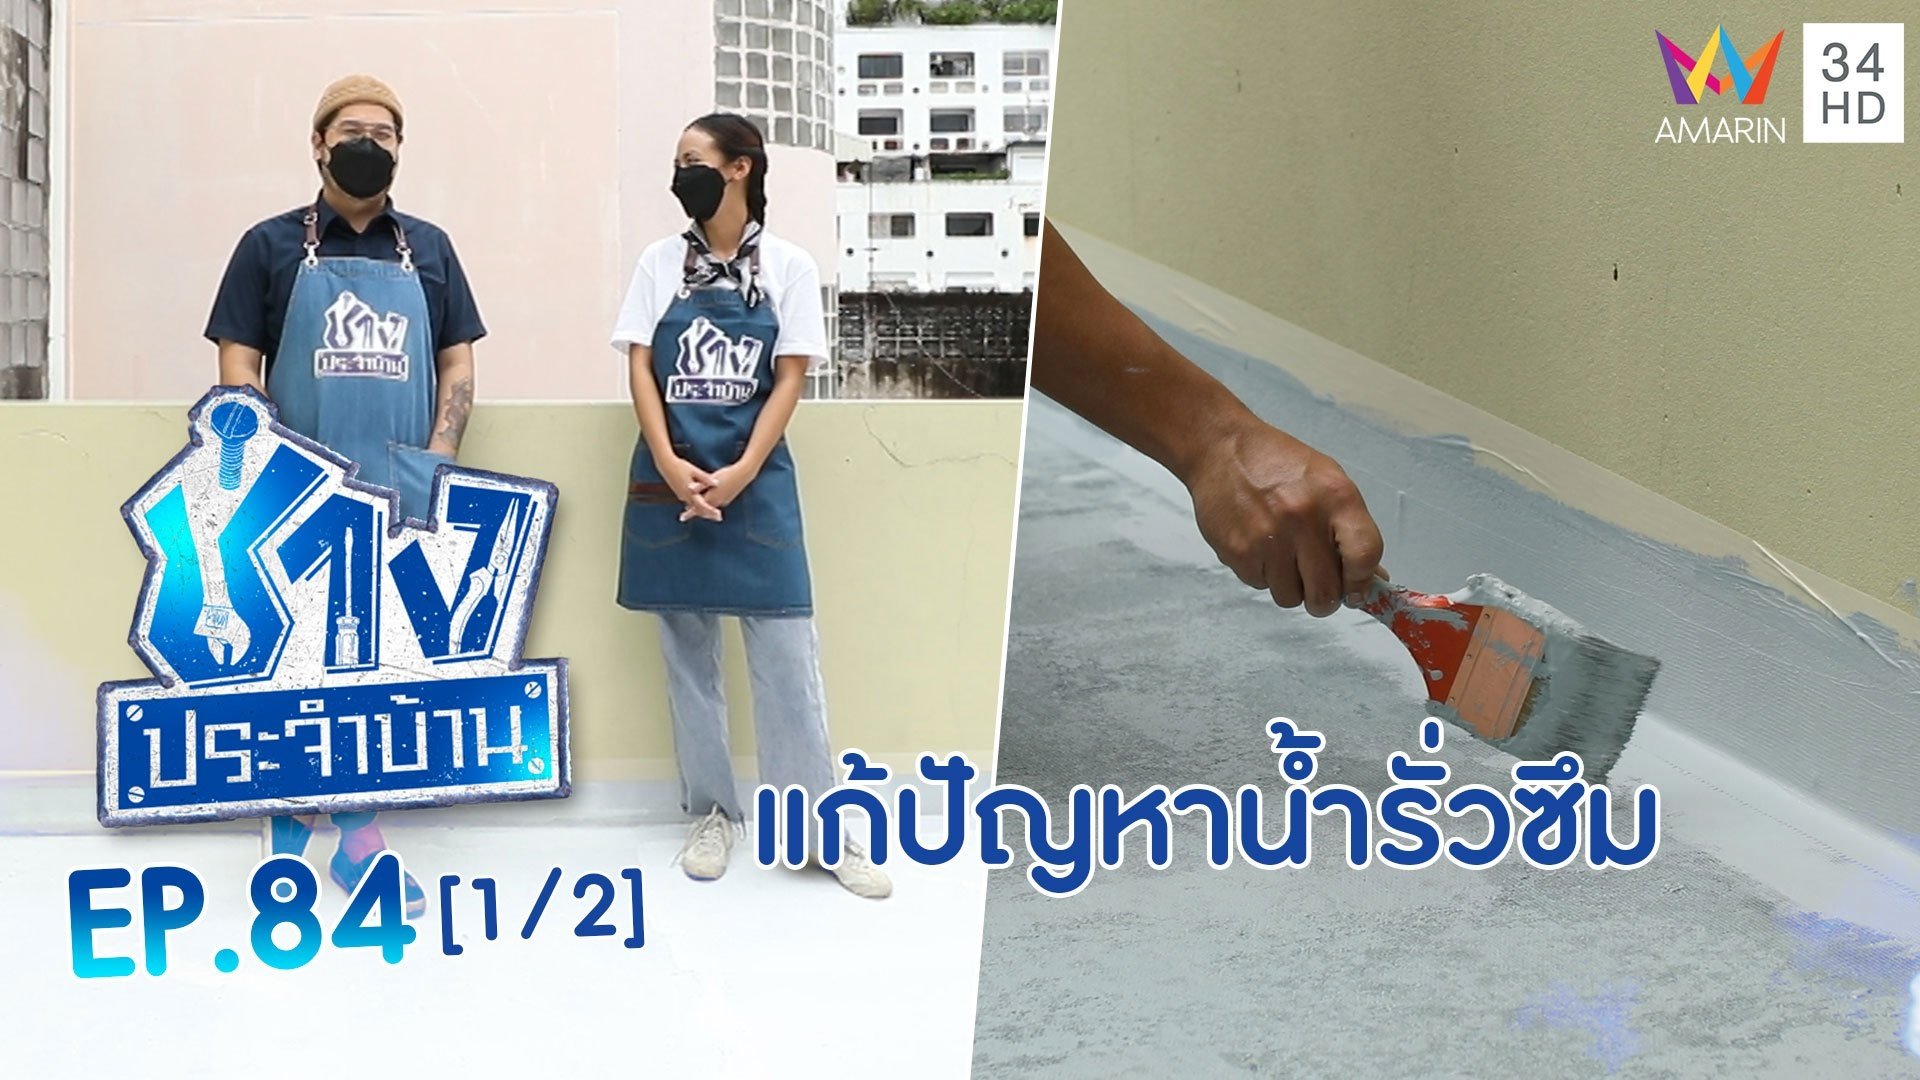 ช่างประจำบ้าน | EP.84 วิธีแก้ปัญหาน้ำรั่วซึมในช่วงหน้าฝน (1/2) | 18 ก.ย. 64 | AMARIN TVHD34